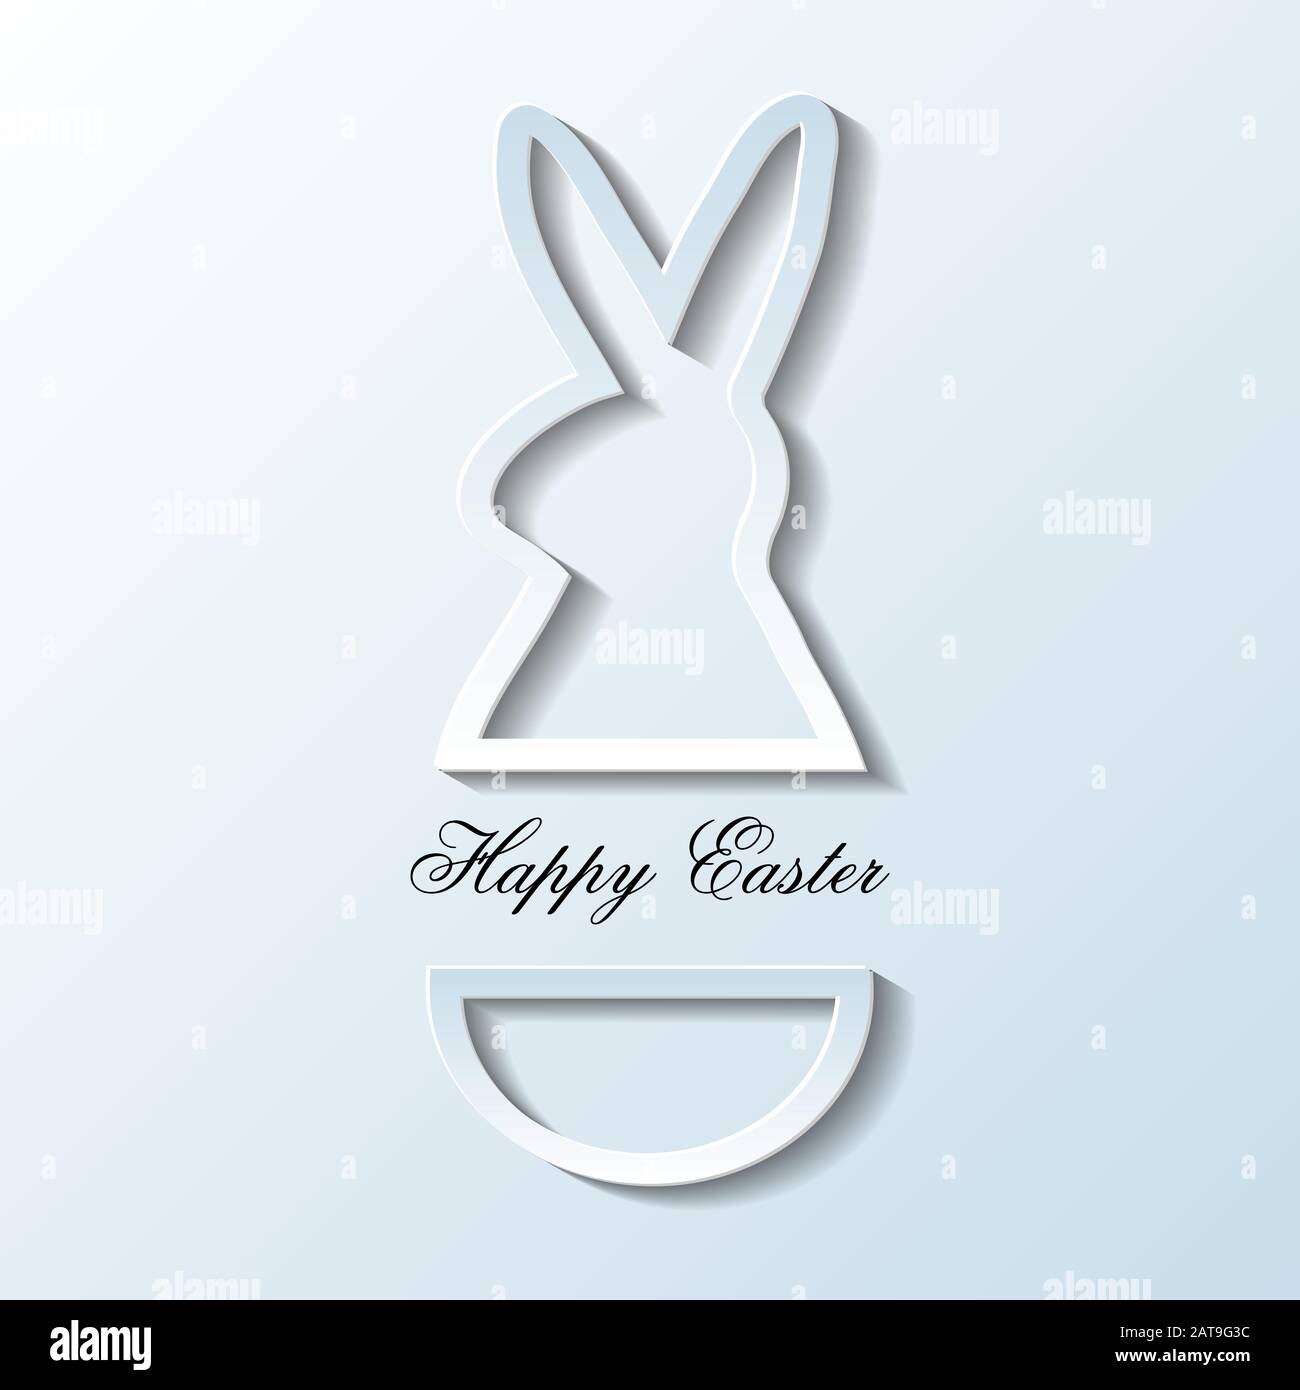 Paper Carved Happy Easter Rabbit - Vektor-Illustration Stock Vektor